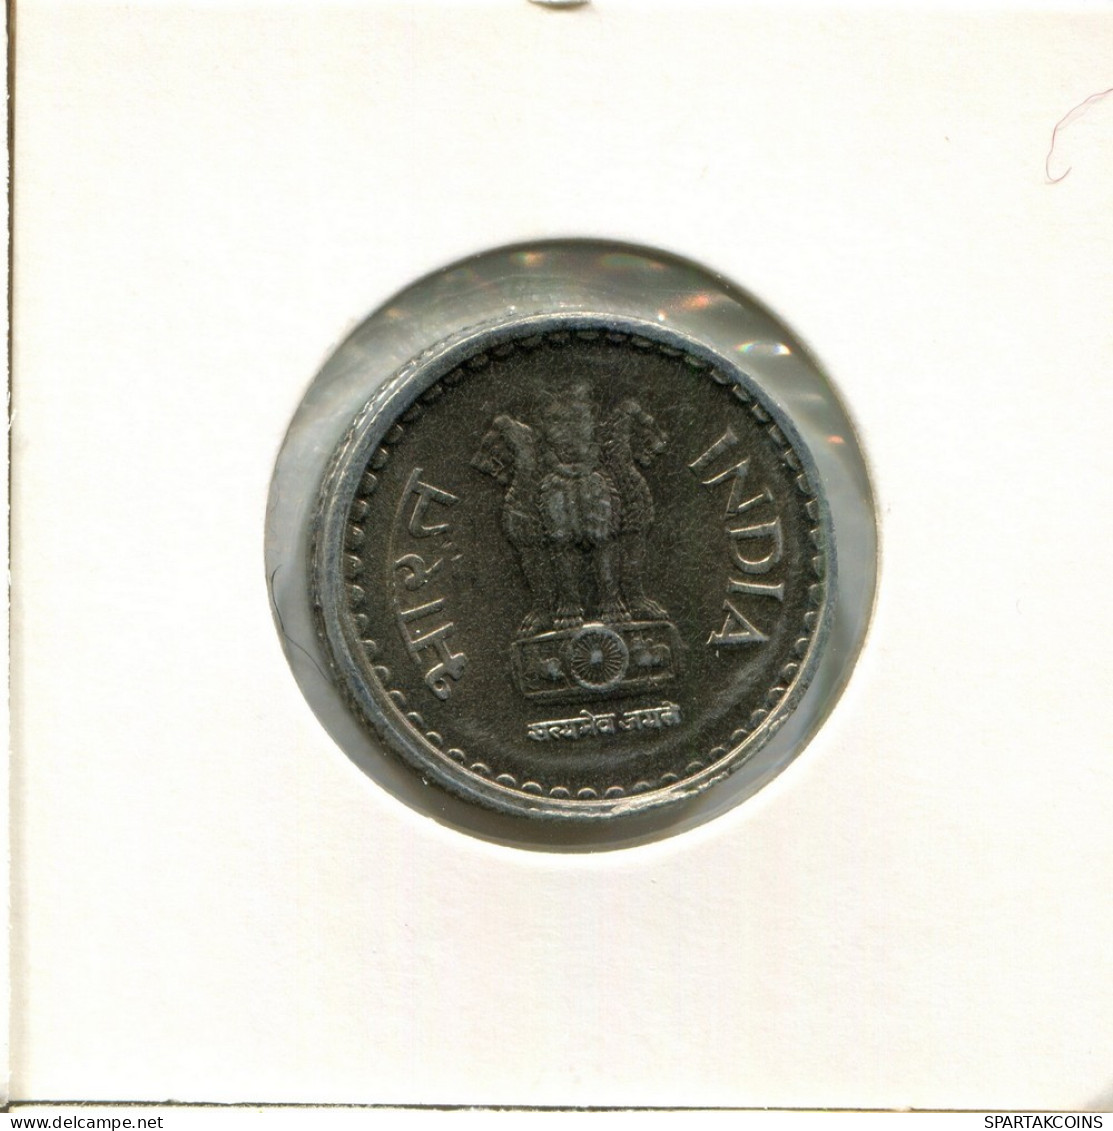 5 RUPEES 1999 INDIA Coin #AY844.U.A - India